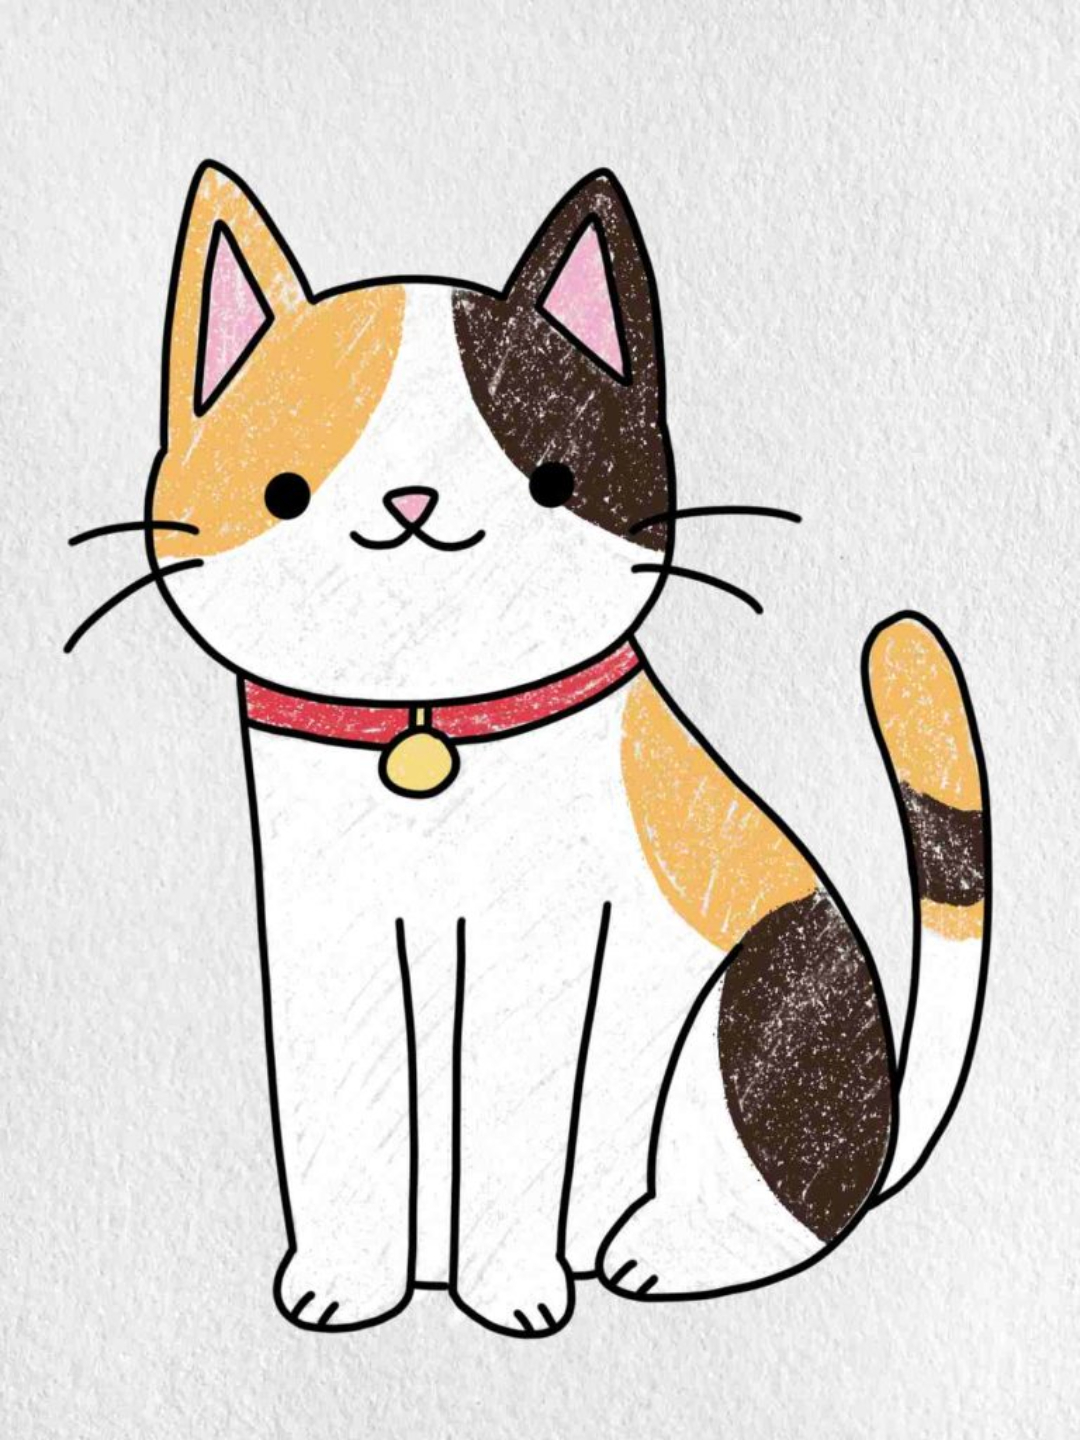 Xem Hơn 100 Ảnh Về Hình Vẽ Mèo Đẹp - Daotaonec